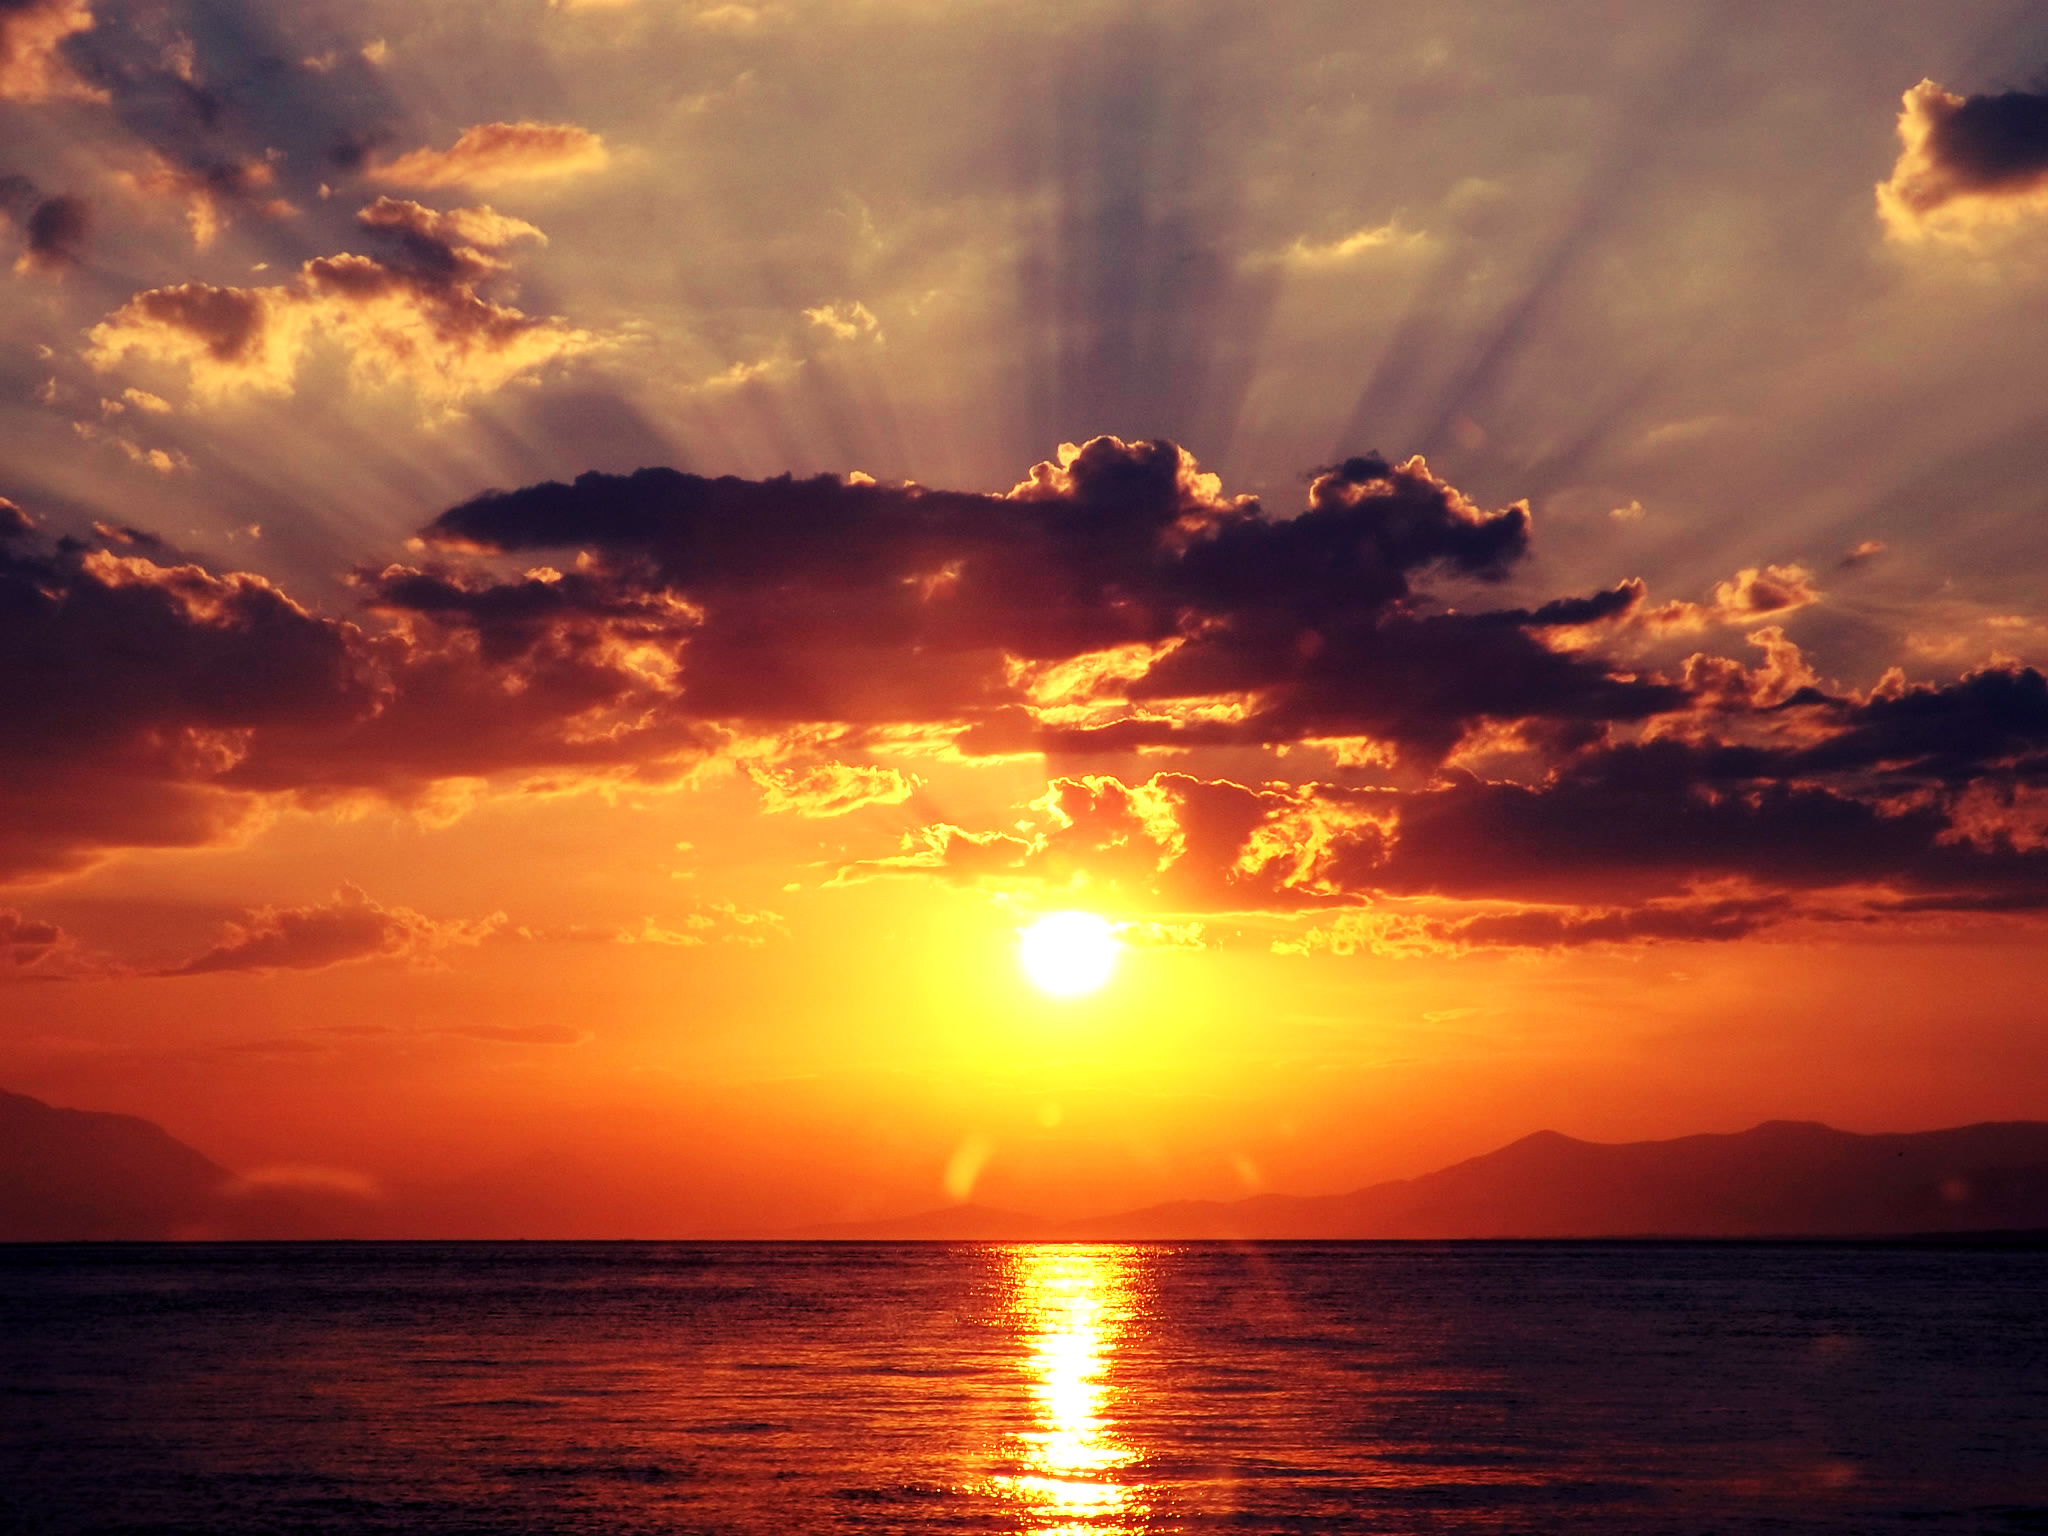 a_beutiful_sunset_in_greece______by_oofallenangelloo-d5beilu.jpg